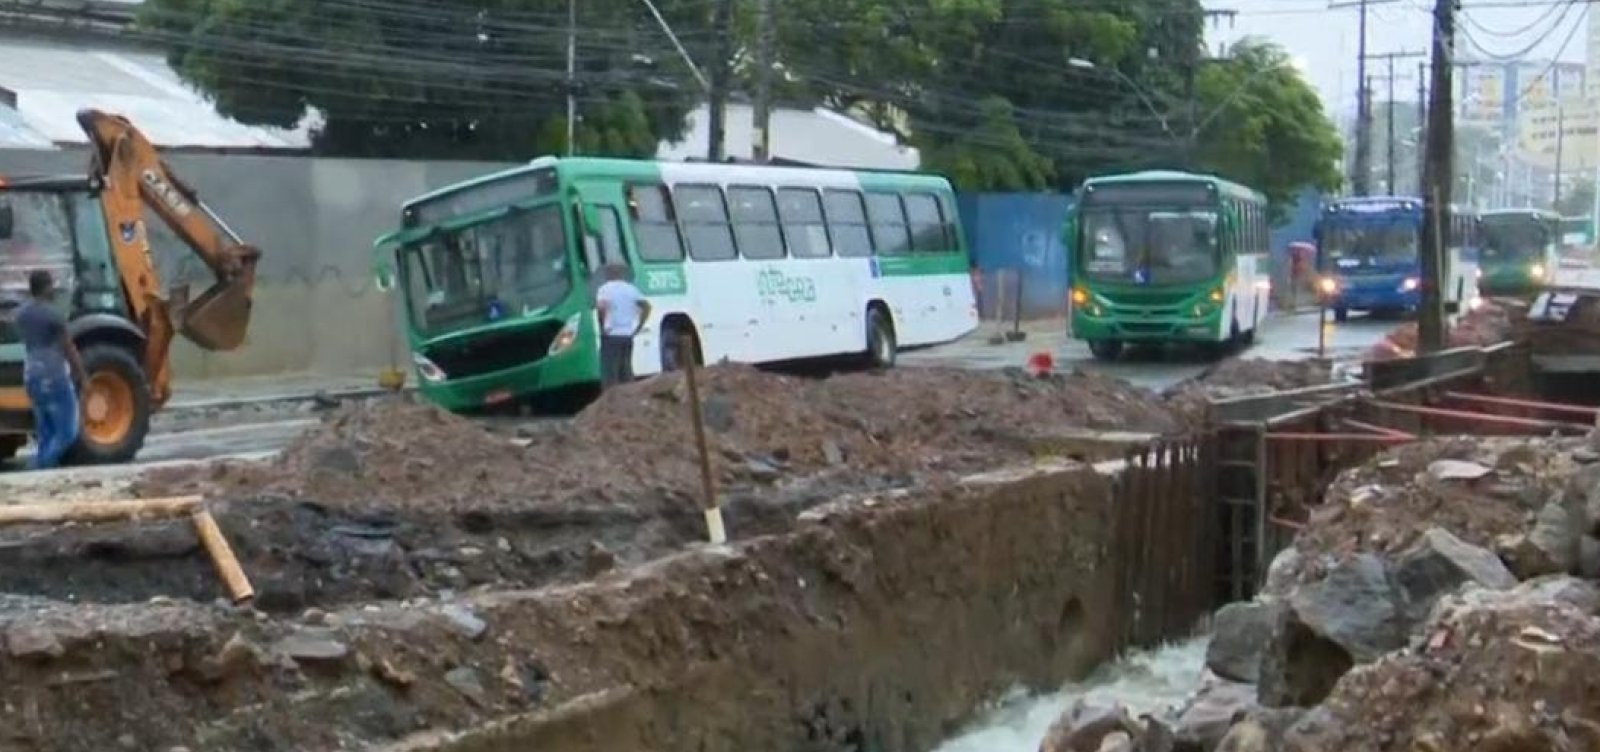 Ônibus cai em buraco na Sete Portas e deixa trânsito lento